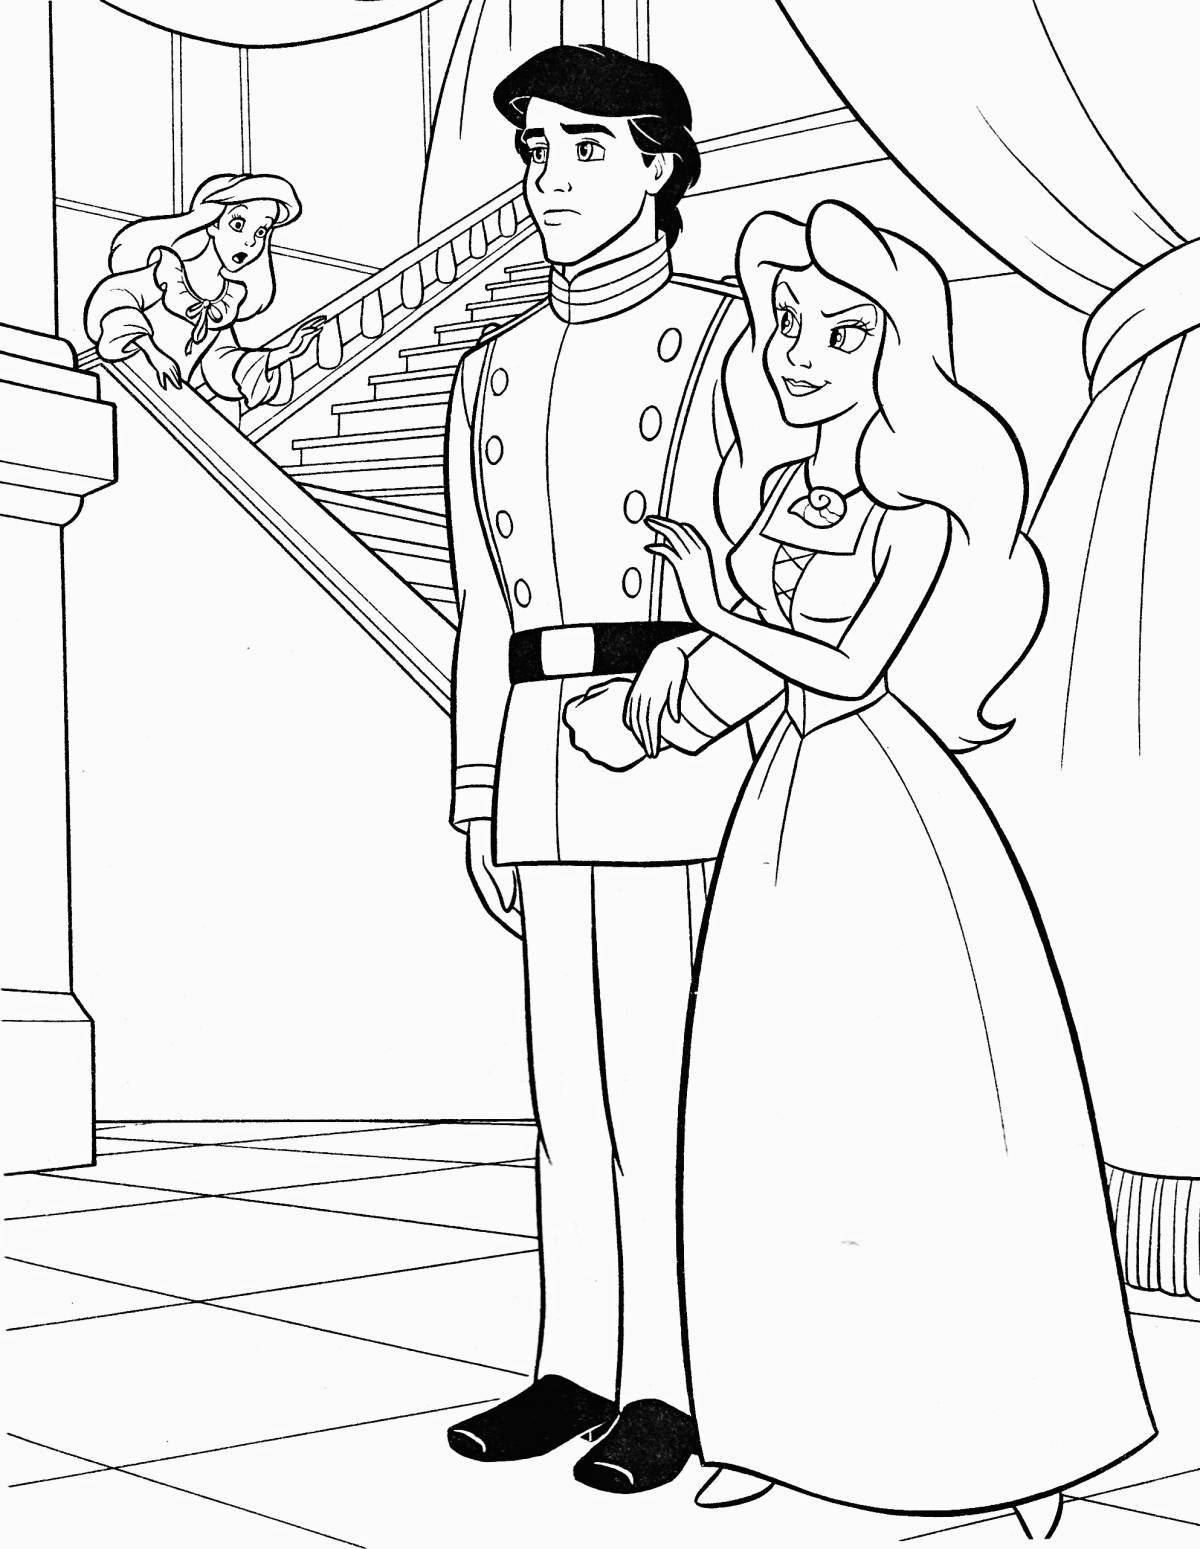 Coloring book shining prince and princess